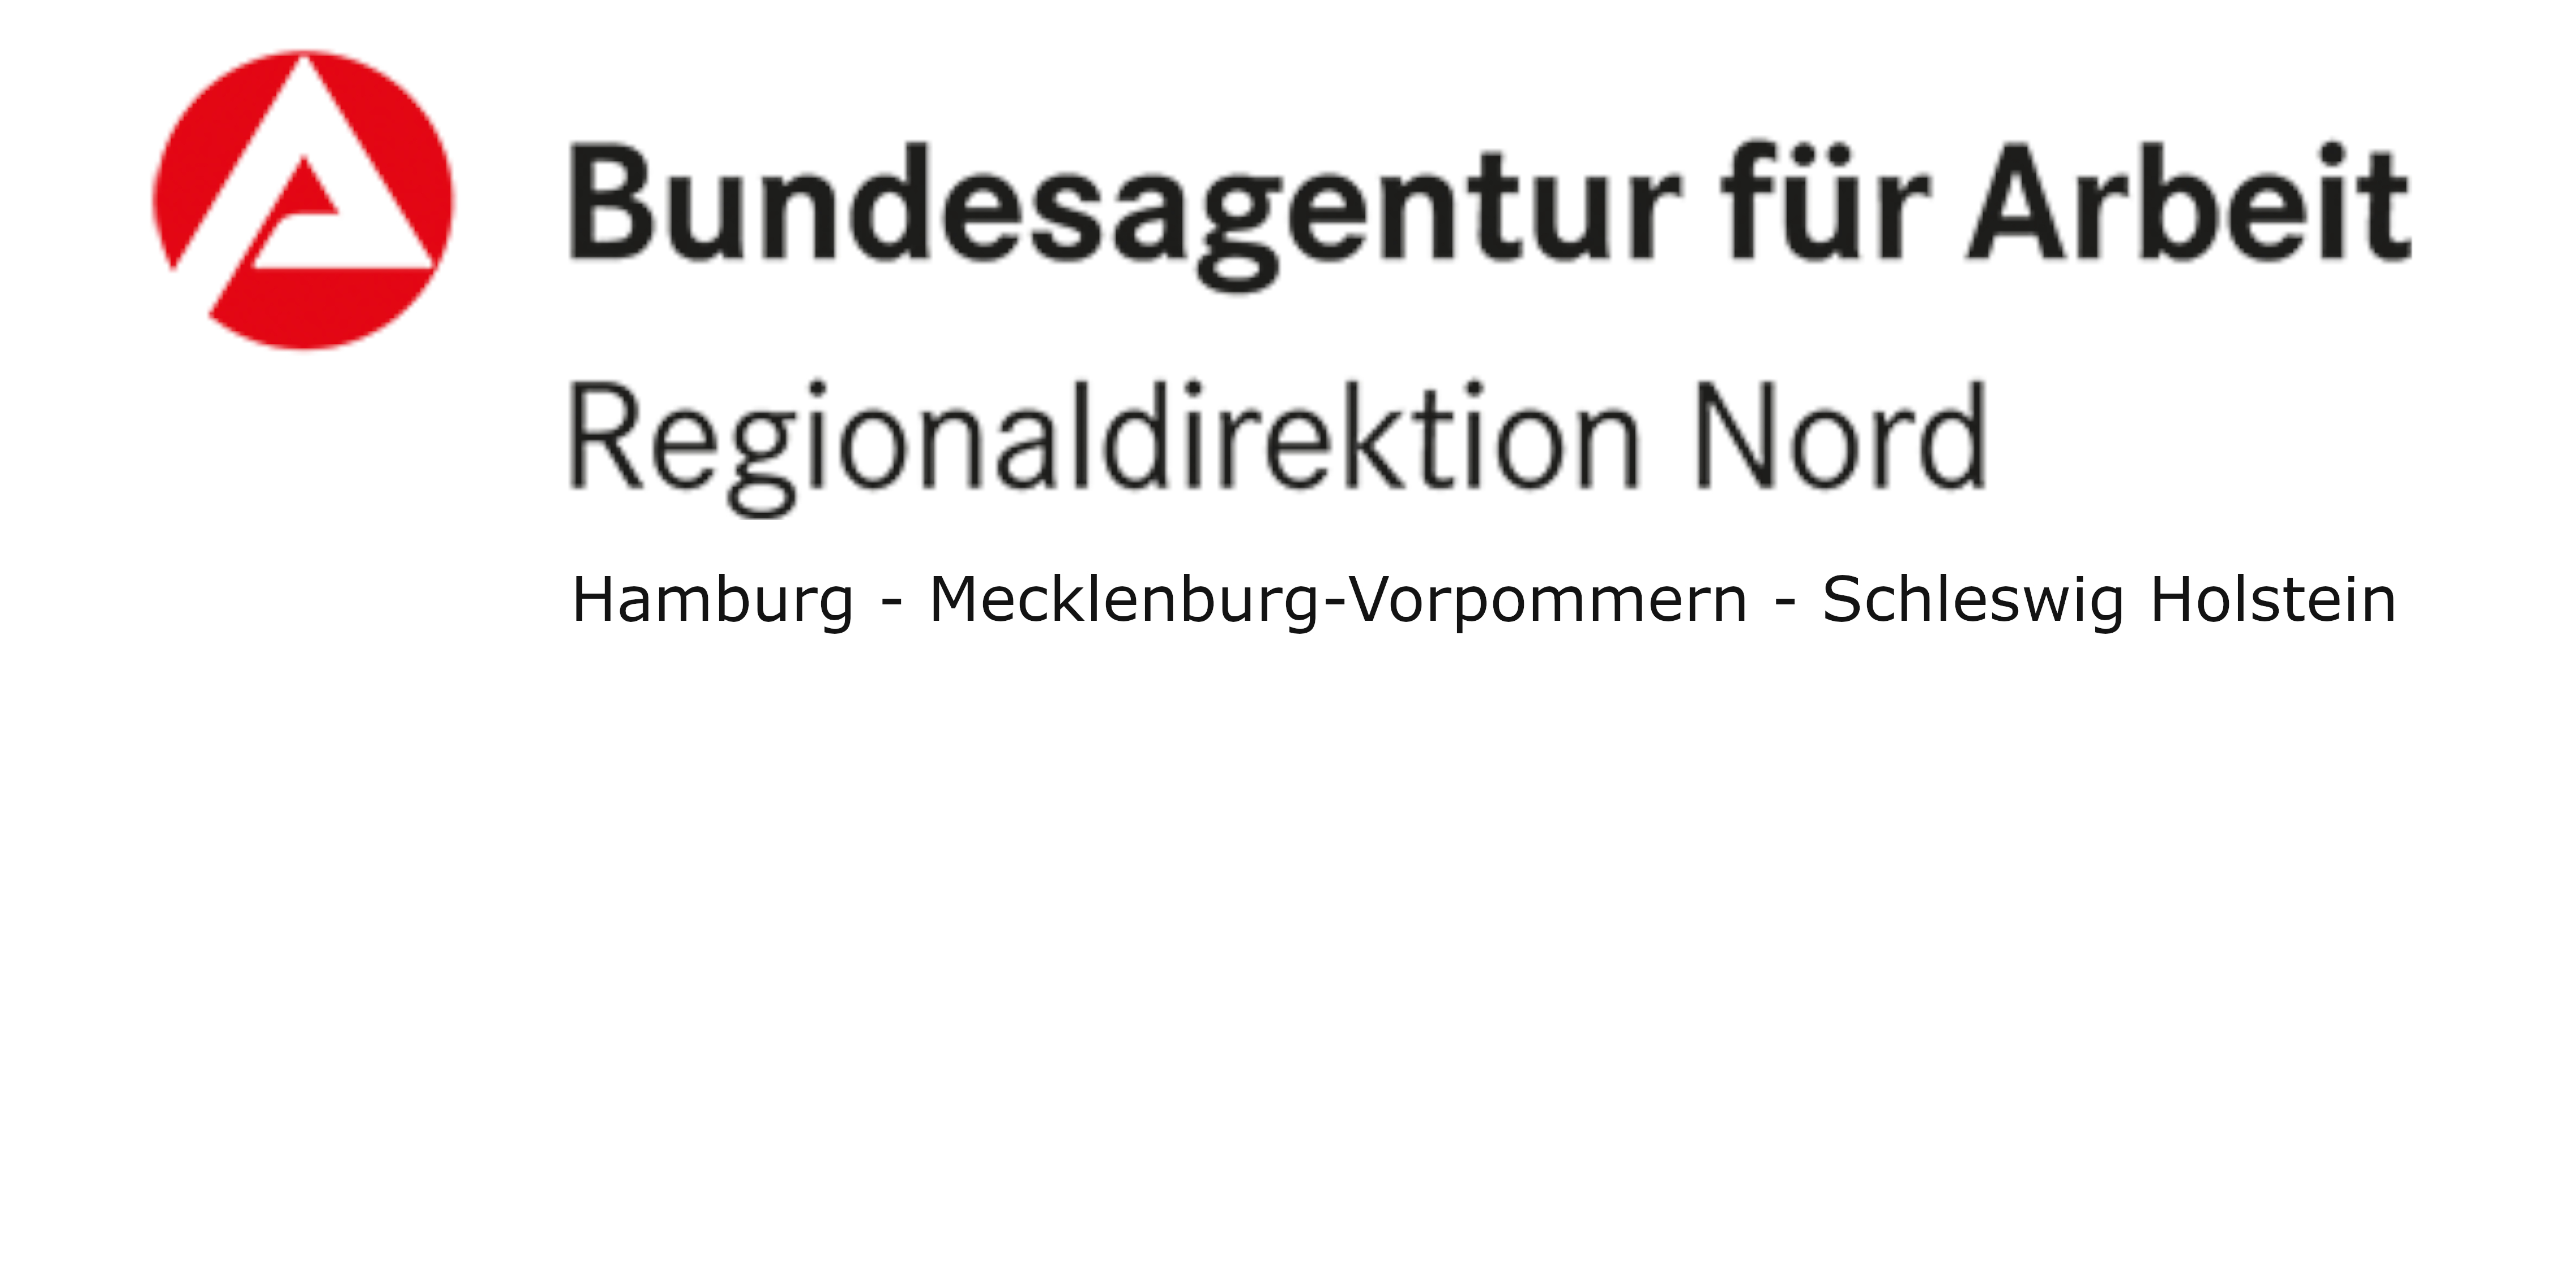 Bundesagentur für Arbeit Regionaldirektion Nord